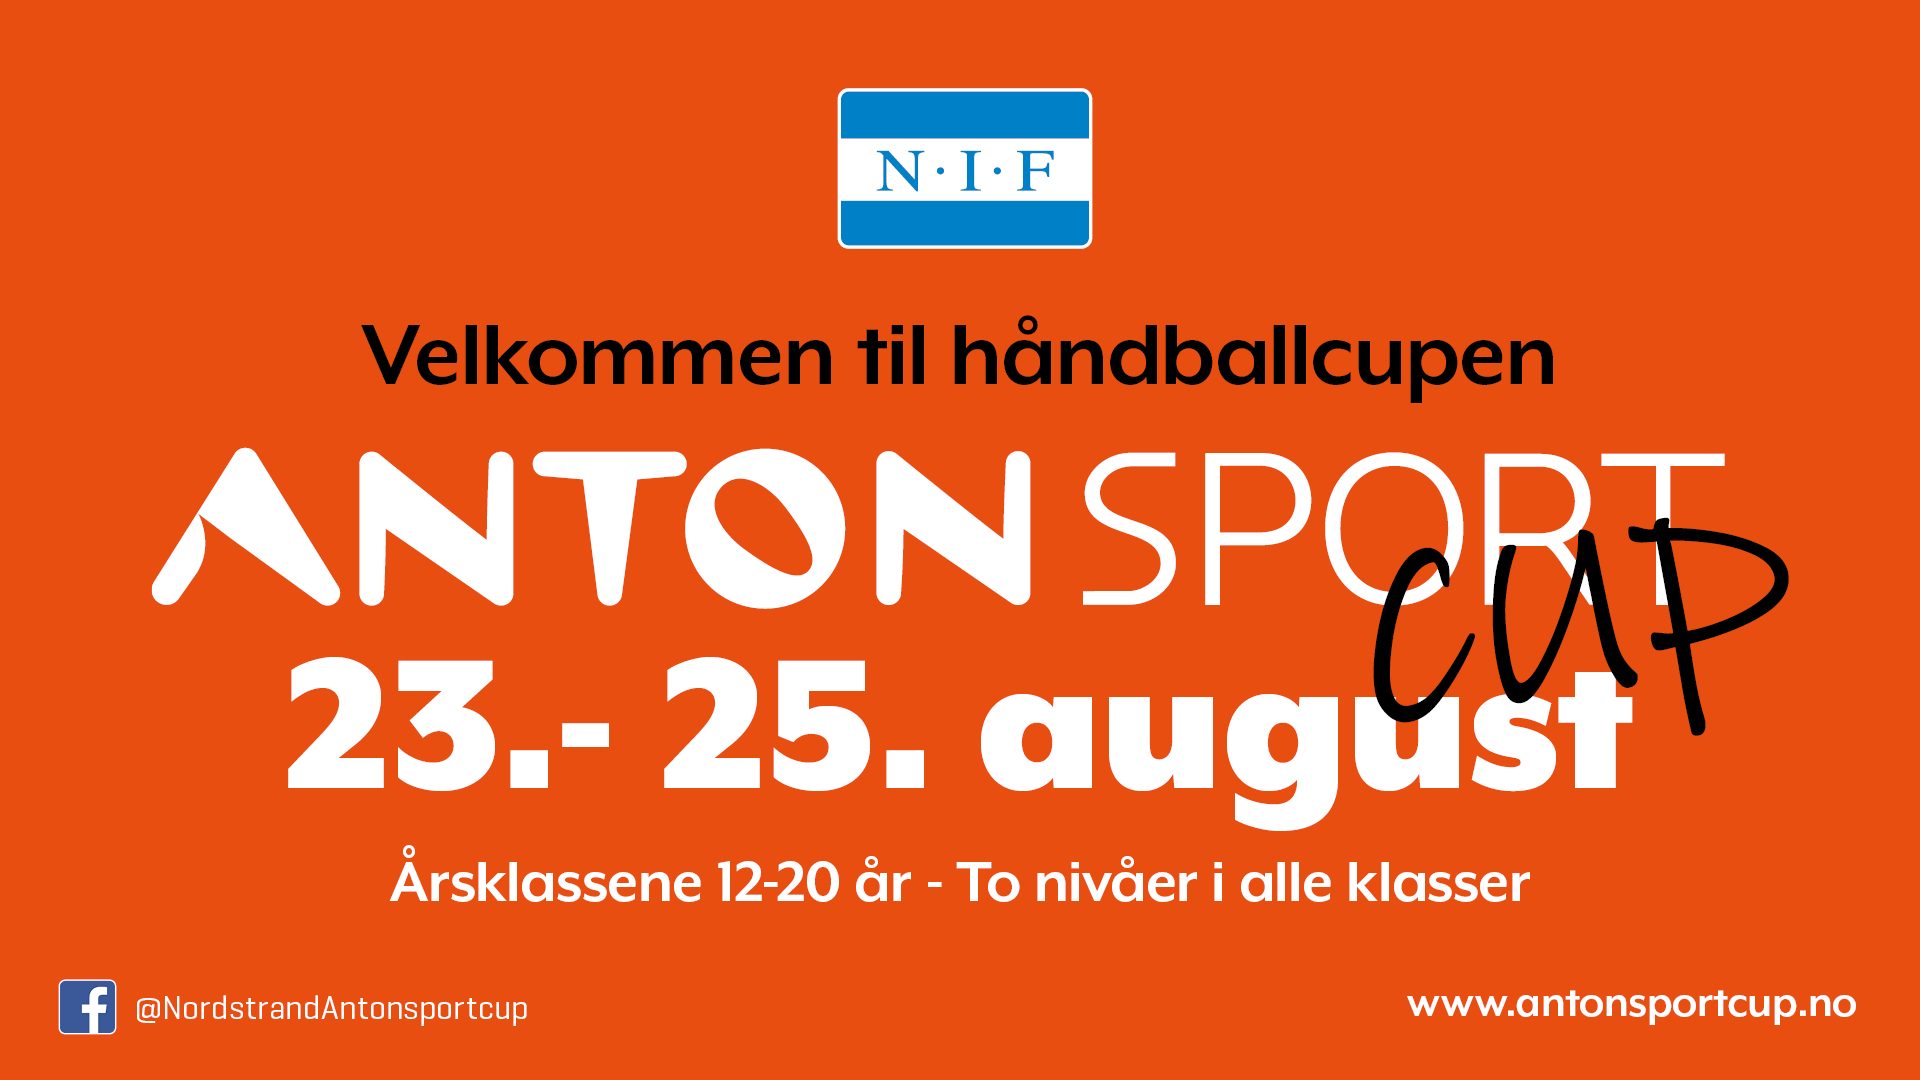 Velkommen til Anton sport cup!